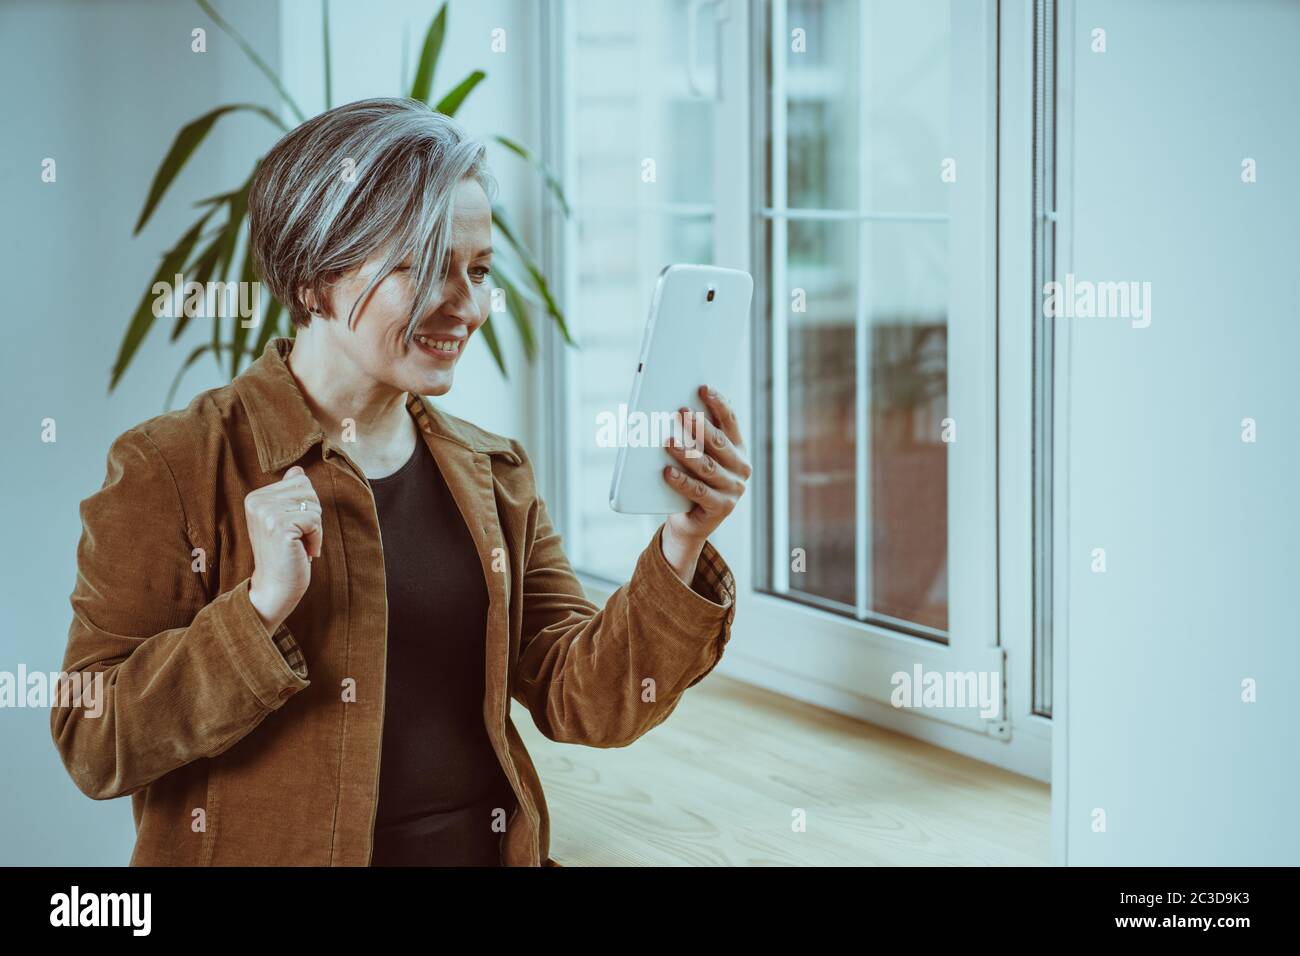 Schöne reife Frau kommuniziert online auf digitalen Tablet. Silberhaarige Frau lächelt beim Sprechen, während sie neben dem Fenster steht. Getöntes Bild Stockfoto